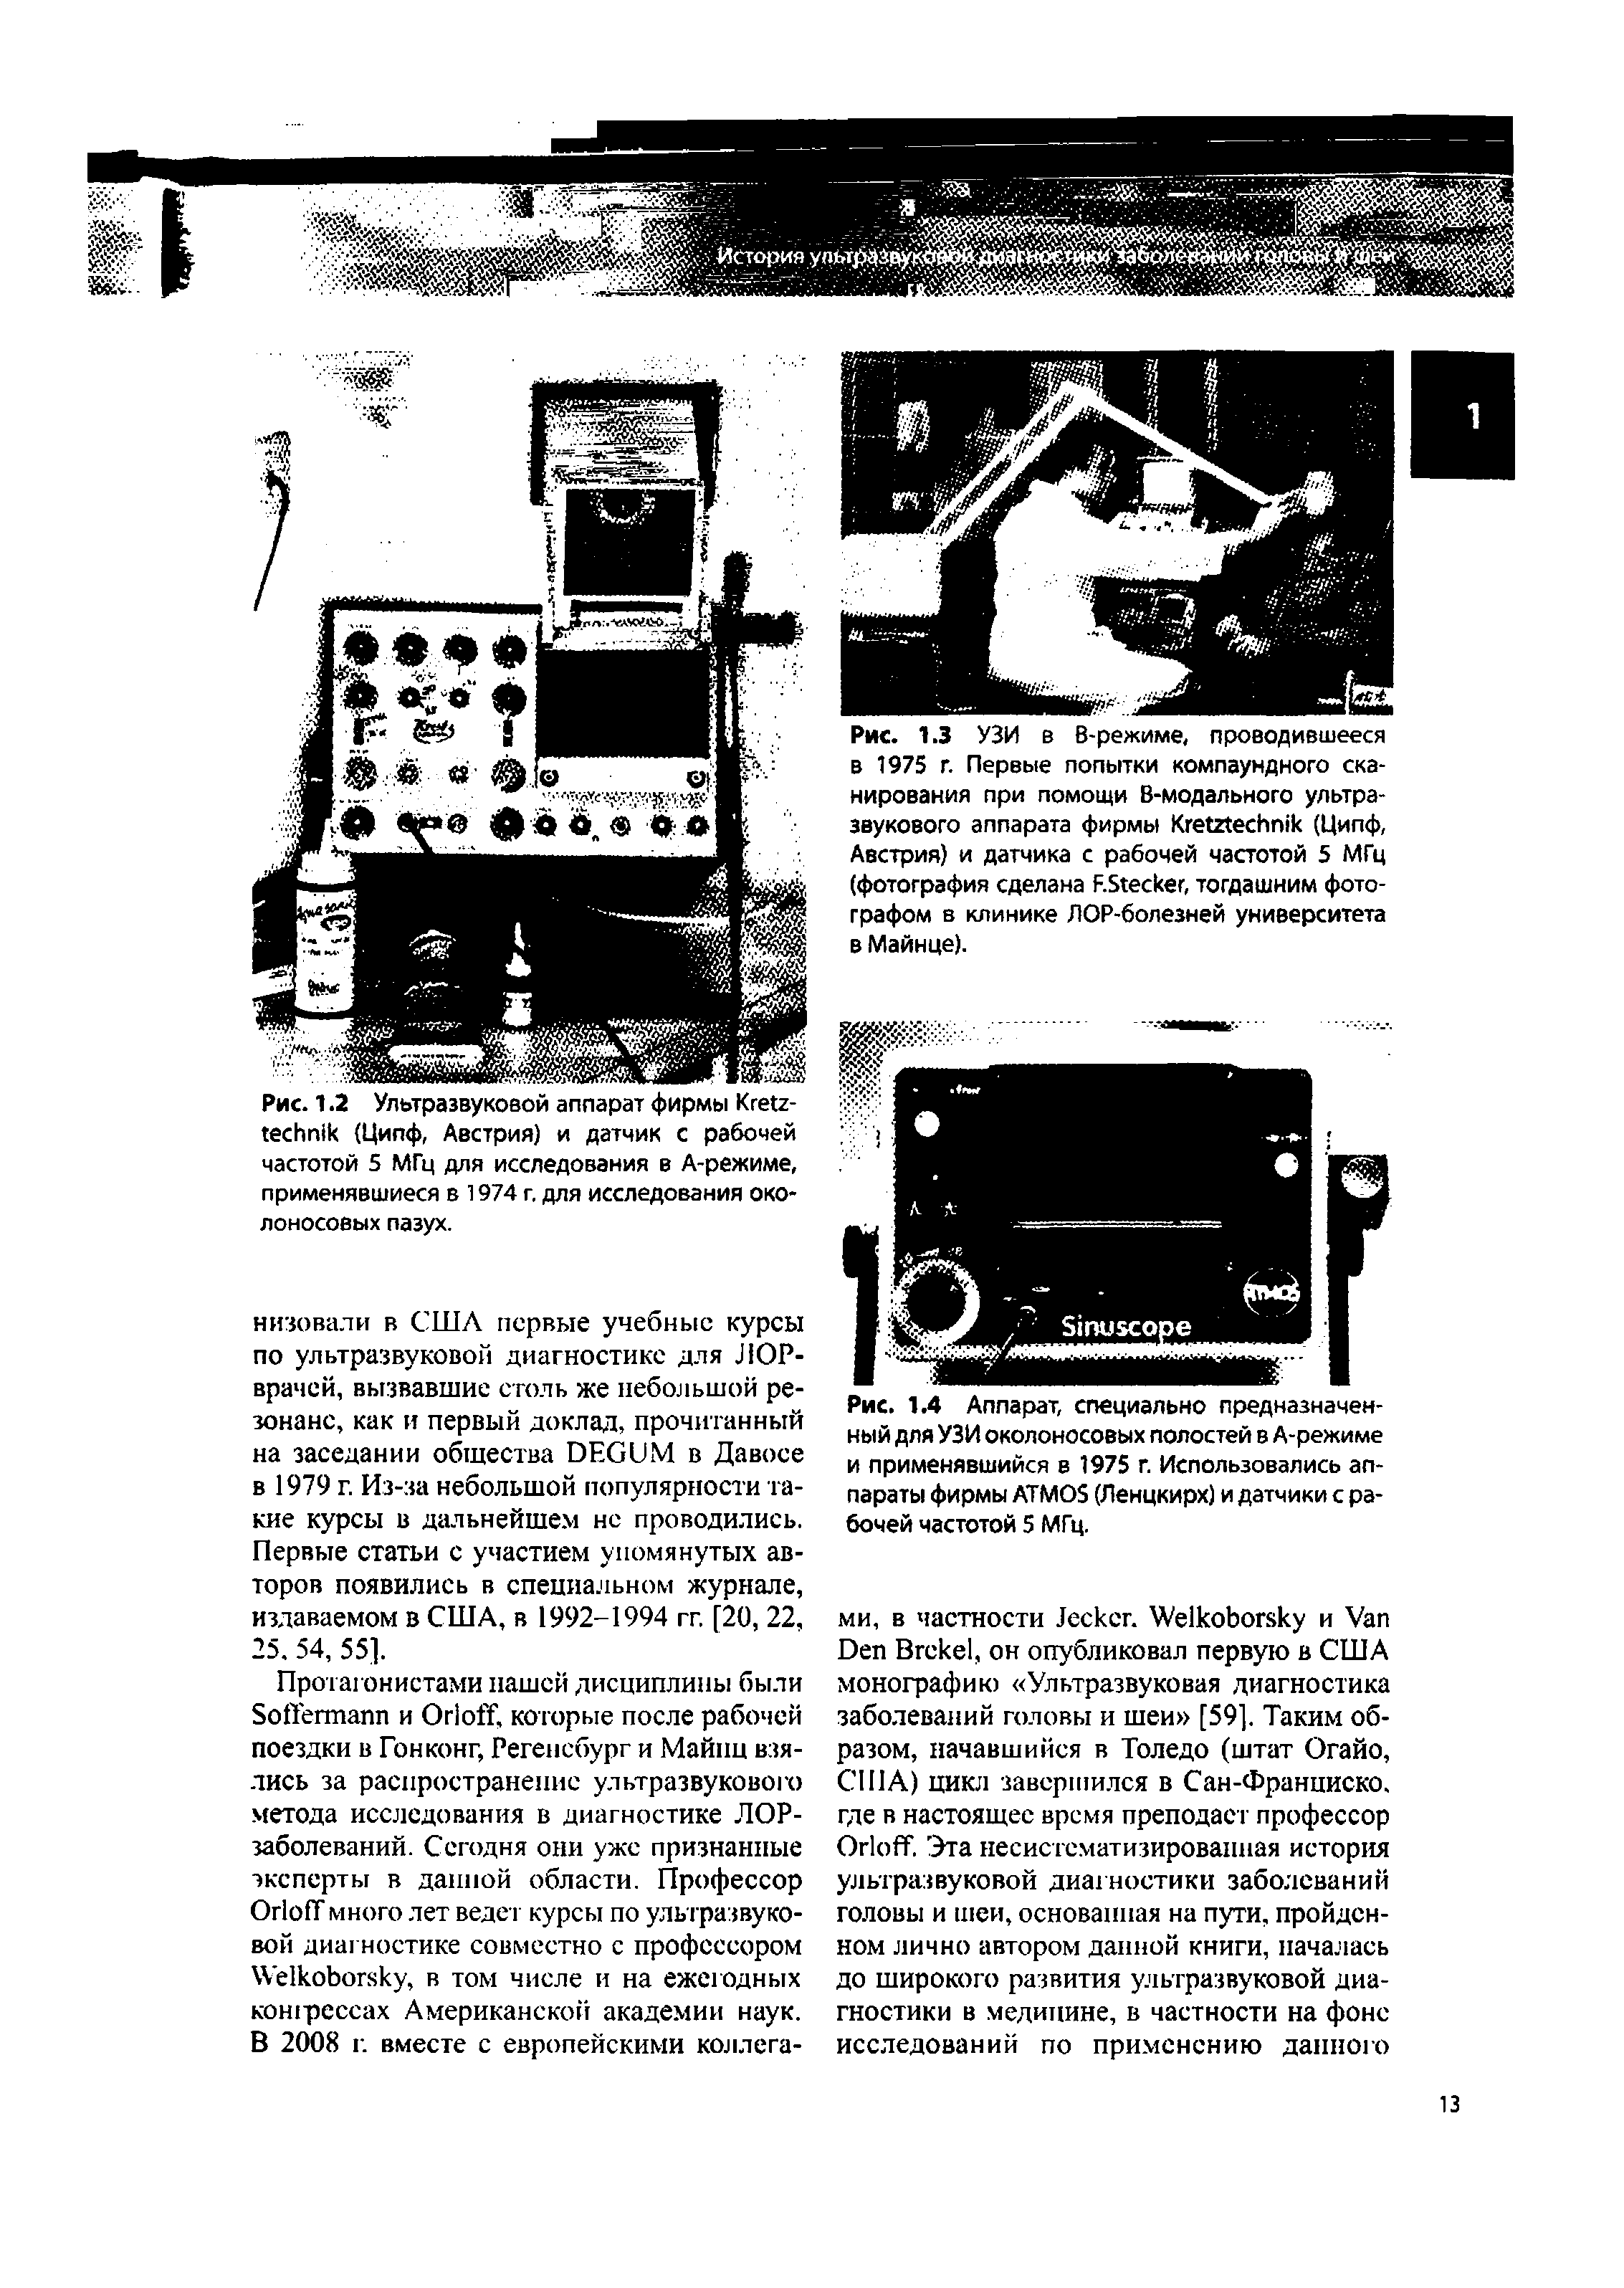 Рис. 1.4 Аппарат, специально предназначенный для УЗИ околоносовых полостей в А-режиме и применявшийся в 1975 г. Использовались аппараты фирмы ATMOS (Ленцкирх) и датчики с рабочей частотой 5 МГц.